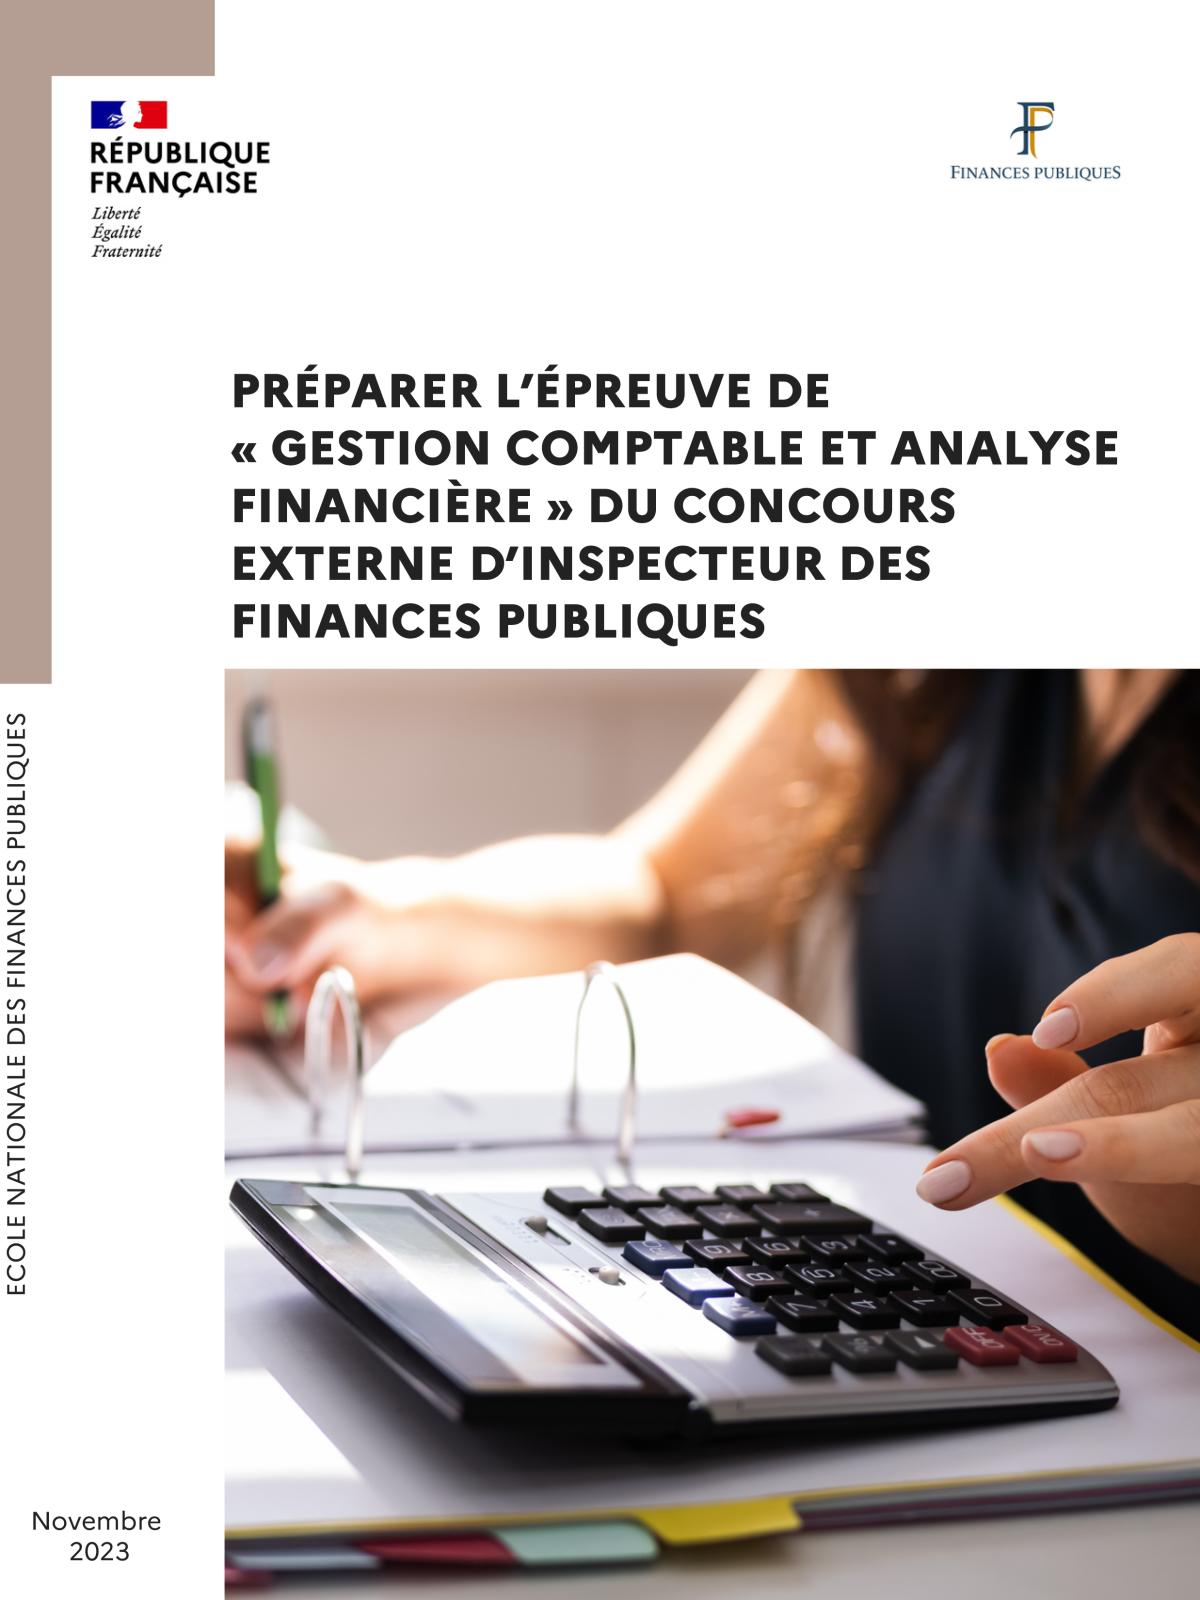 Guide de préparation à l'épreuve de gestion comptable et analyse financière